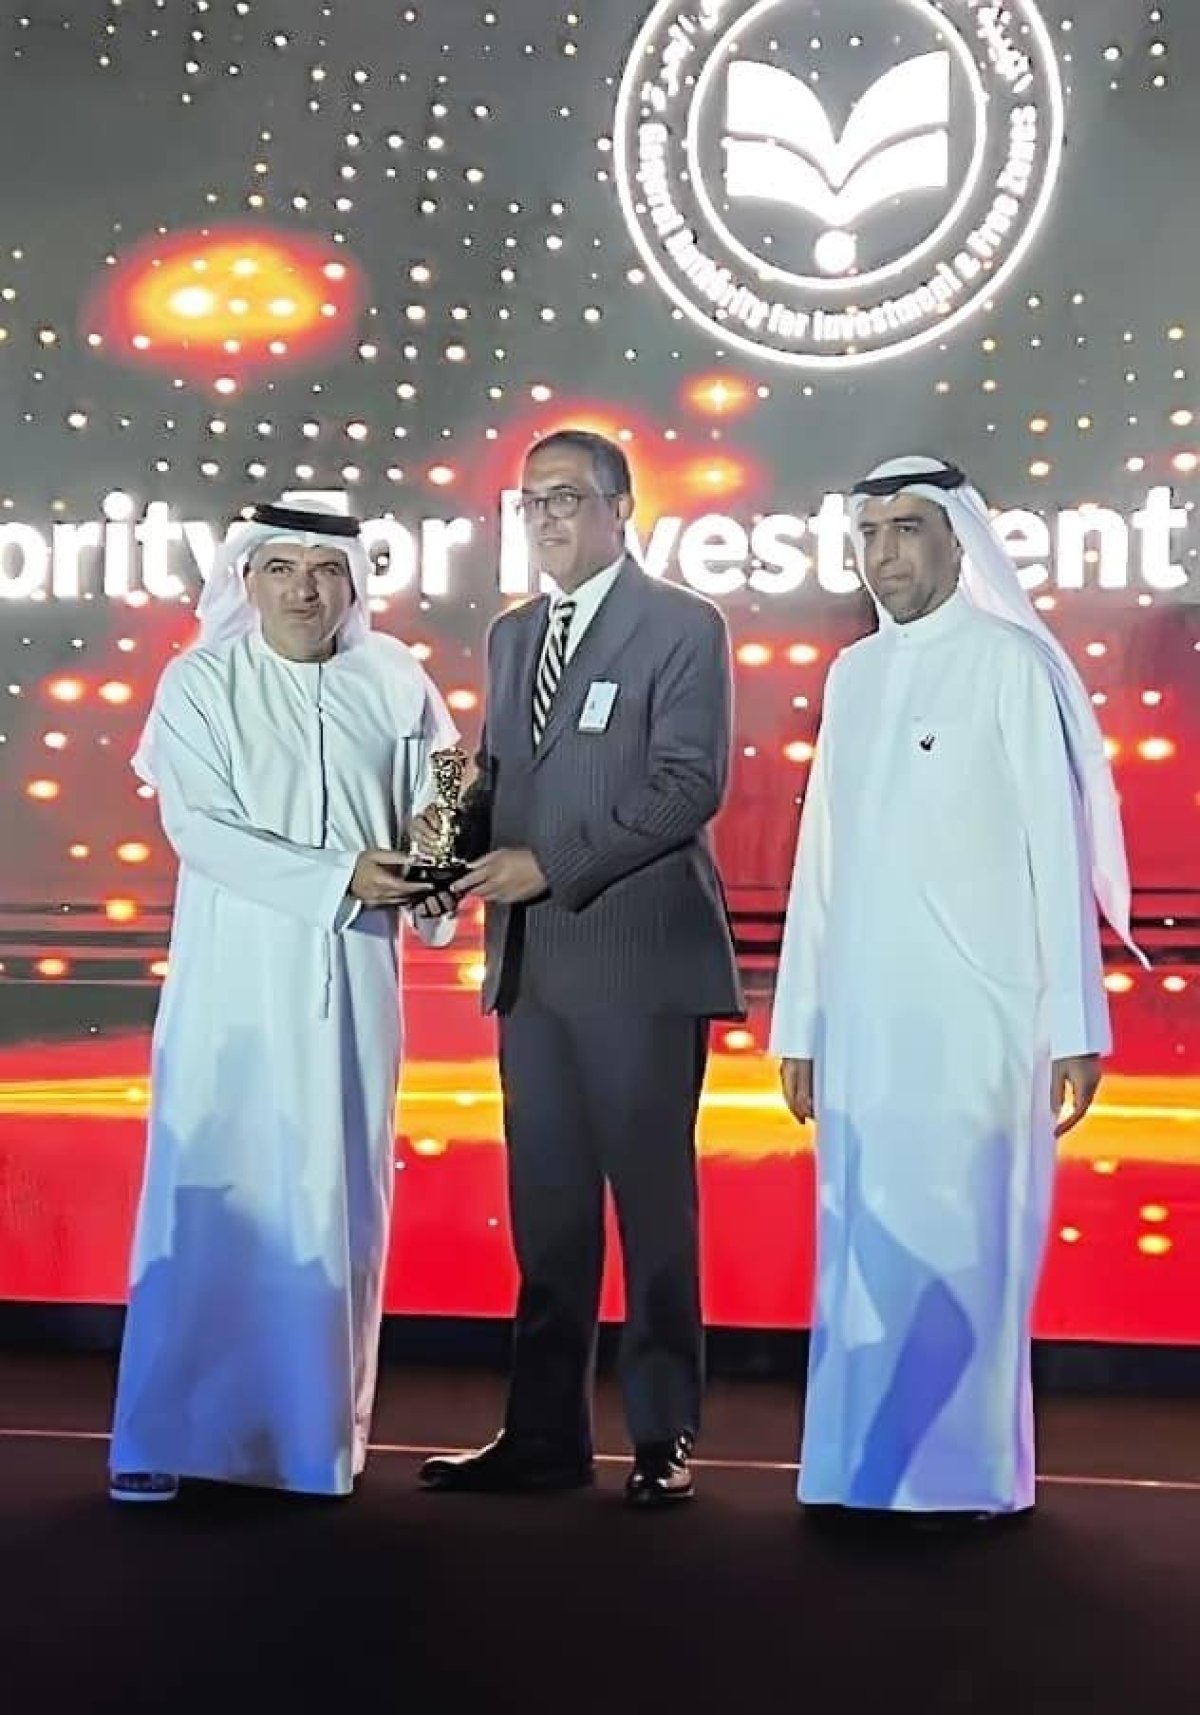 الهيئة العامة للاستثمار تفوز بجائزة جذب أفضل مشروع بمنطقة الشرق الأوسط وشمال أفريقيا